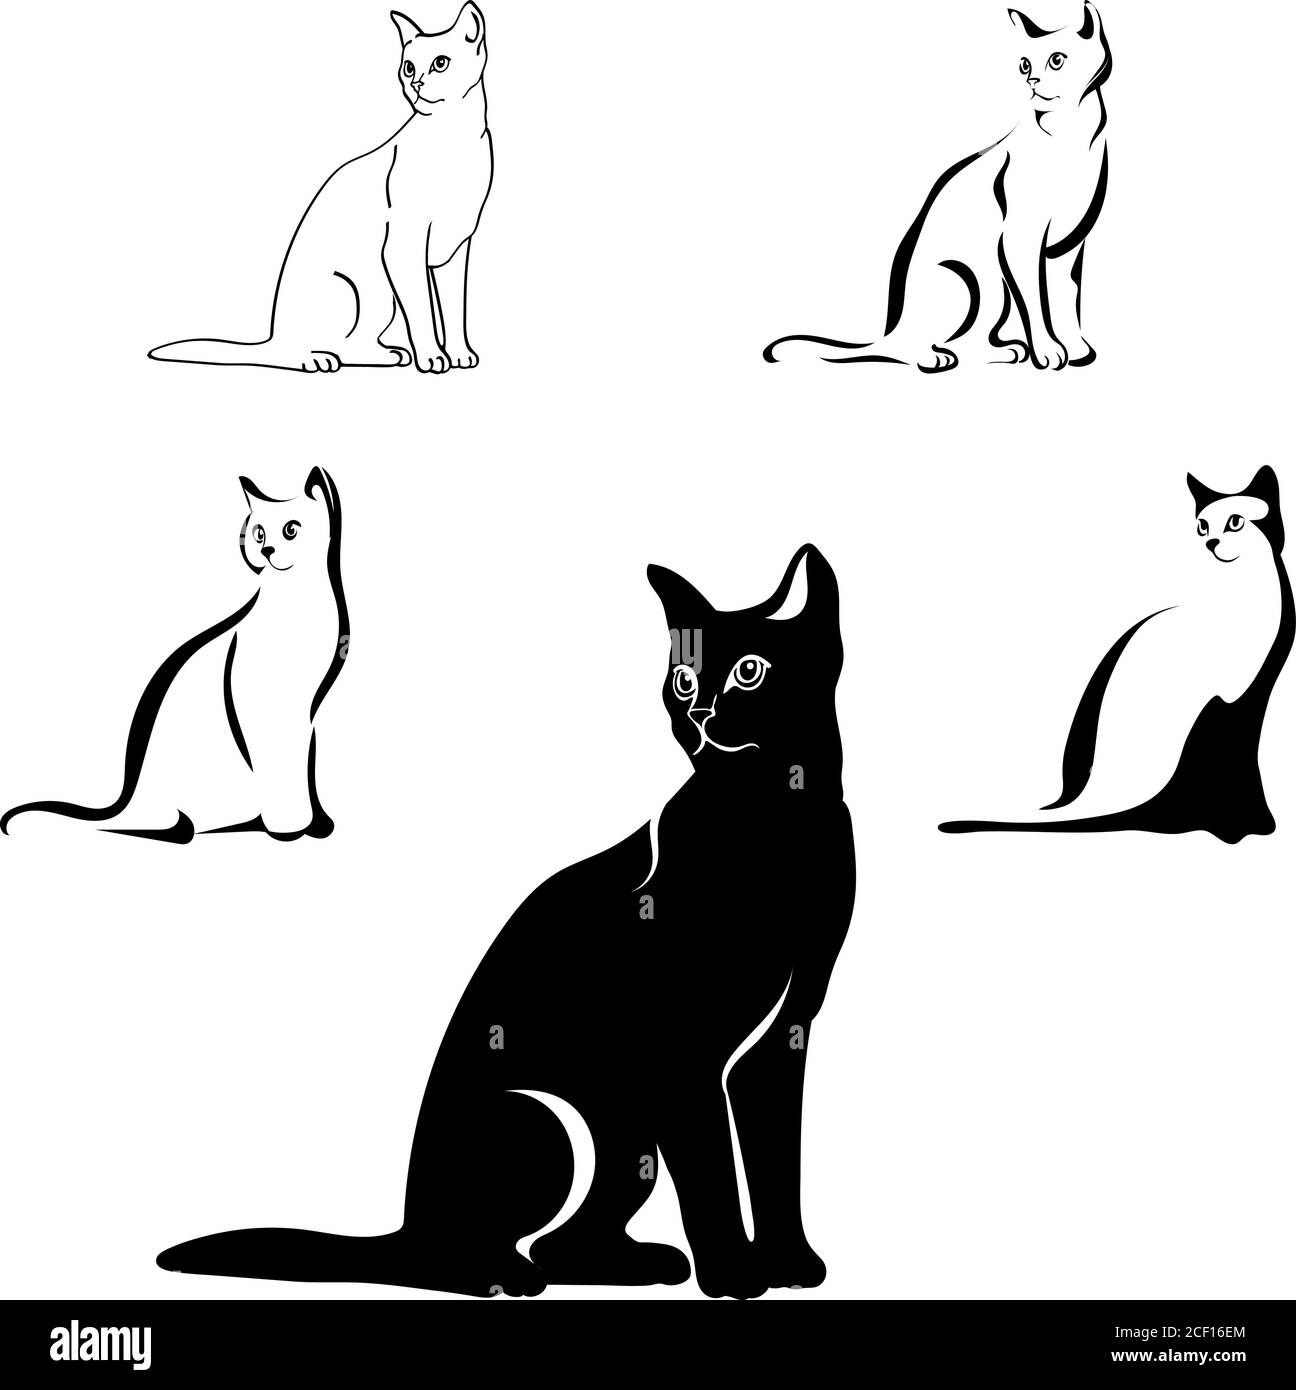 Katzen schwarzes Bild in verschiedenen Positionen, Katze sitzend, liegend,  gehend, spielend, Vektor, schwarz, isoliert, weiß, gesetzt, Hintergrund,  Umriss, Tier Stock-Vektorgrafik - Alamy